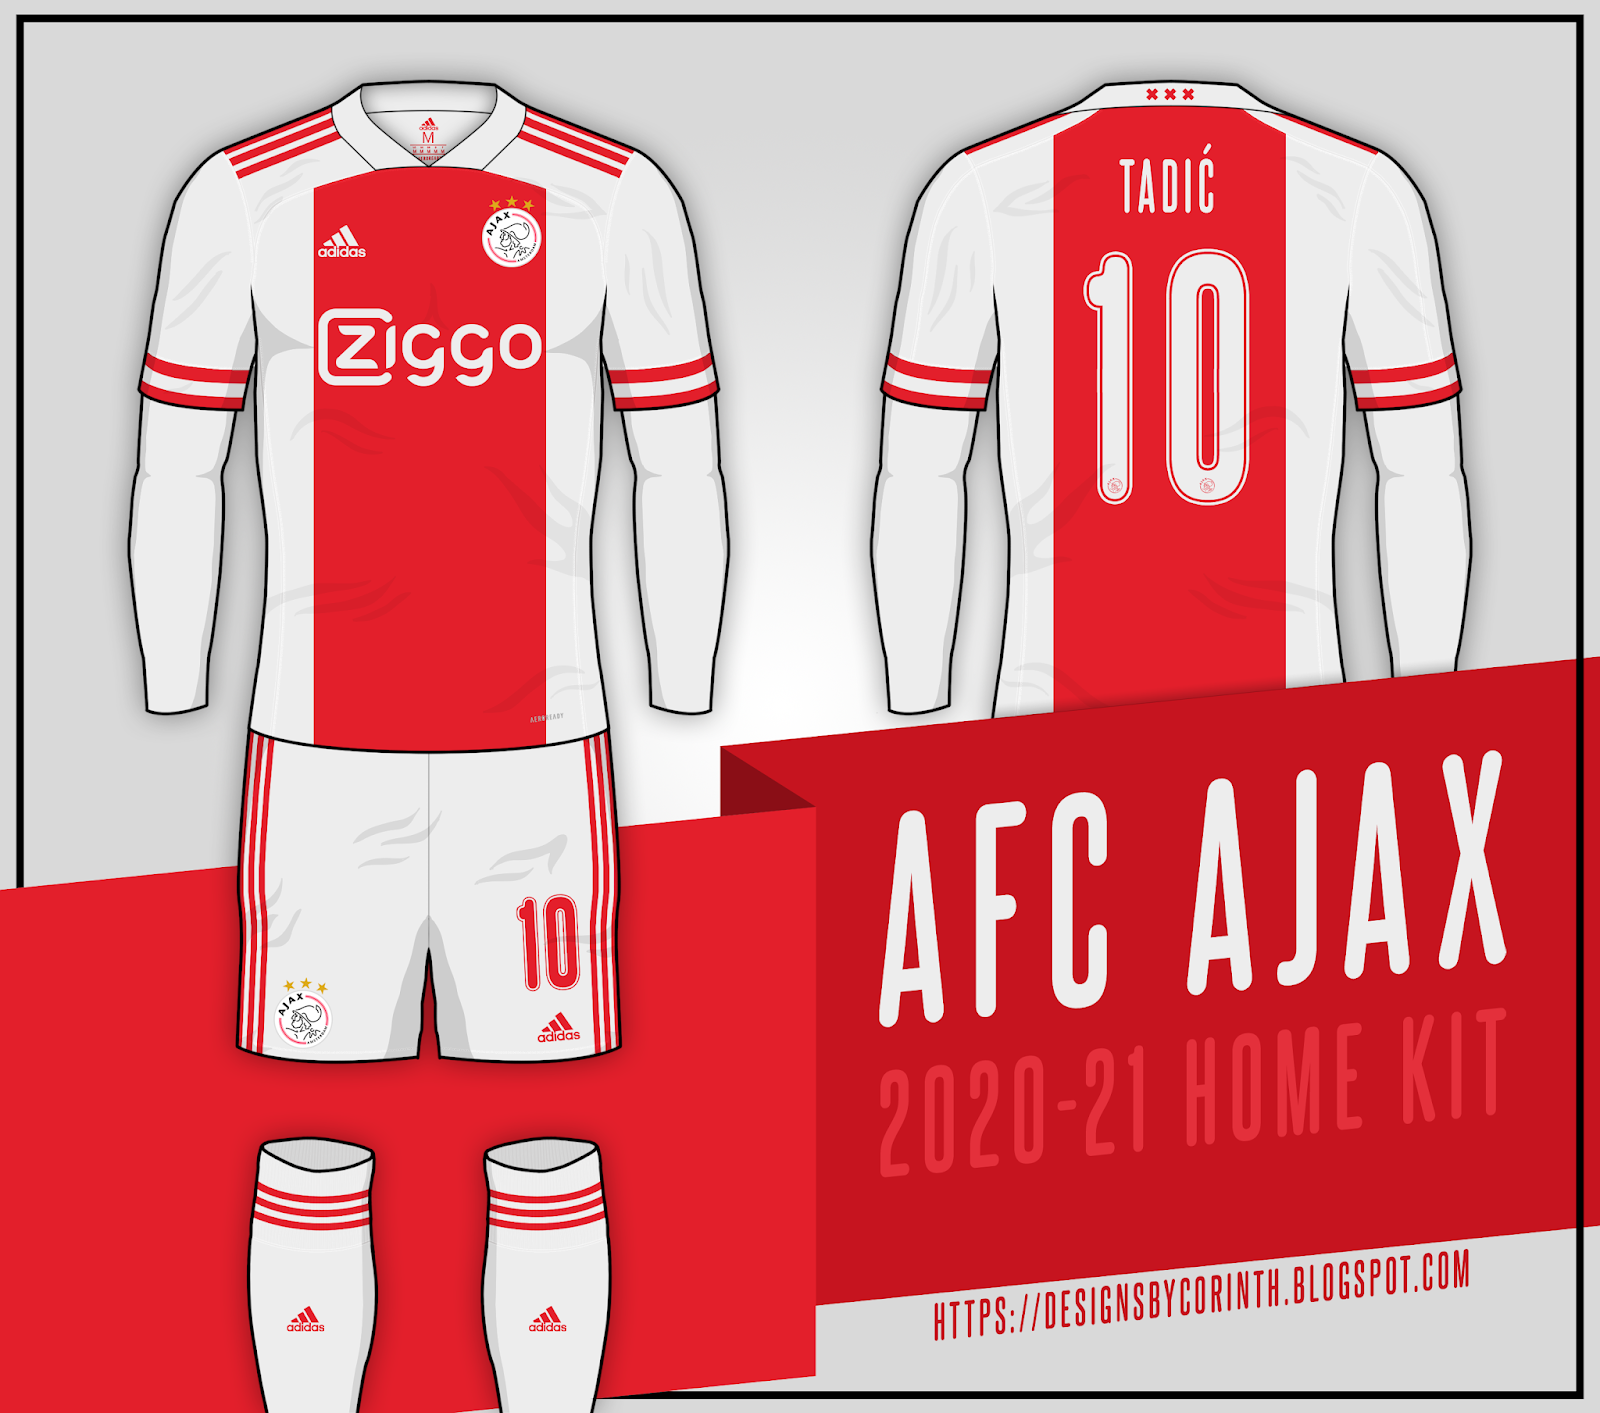 ajax 2020 jersey